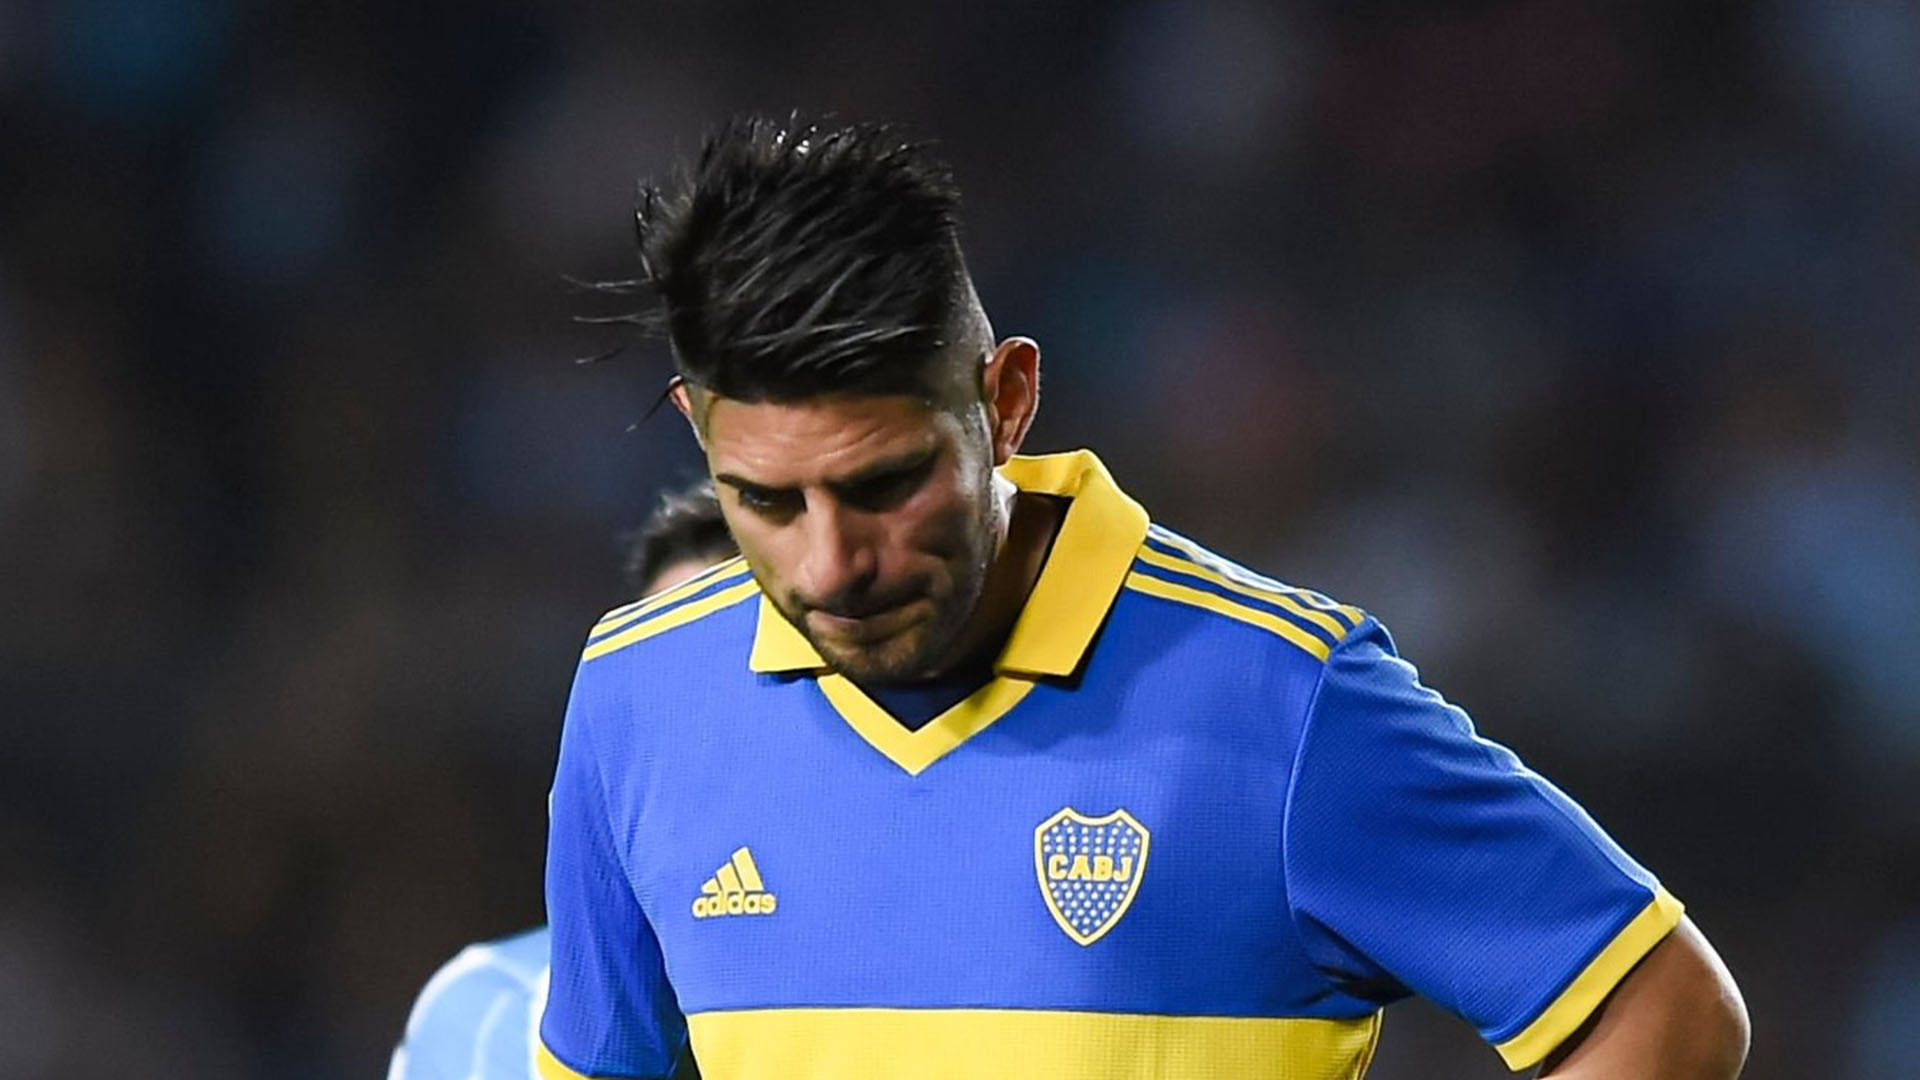 Carlos Zambrano, el rostro de la polémica en Boca Juniors: golpe, sanción y nueva oportunidad